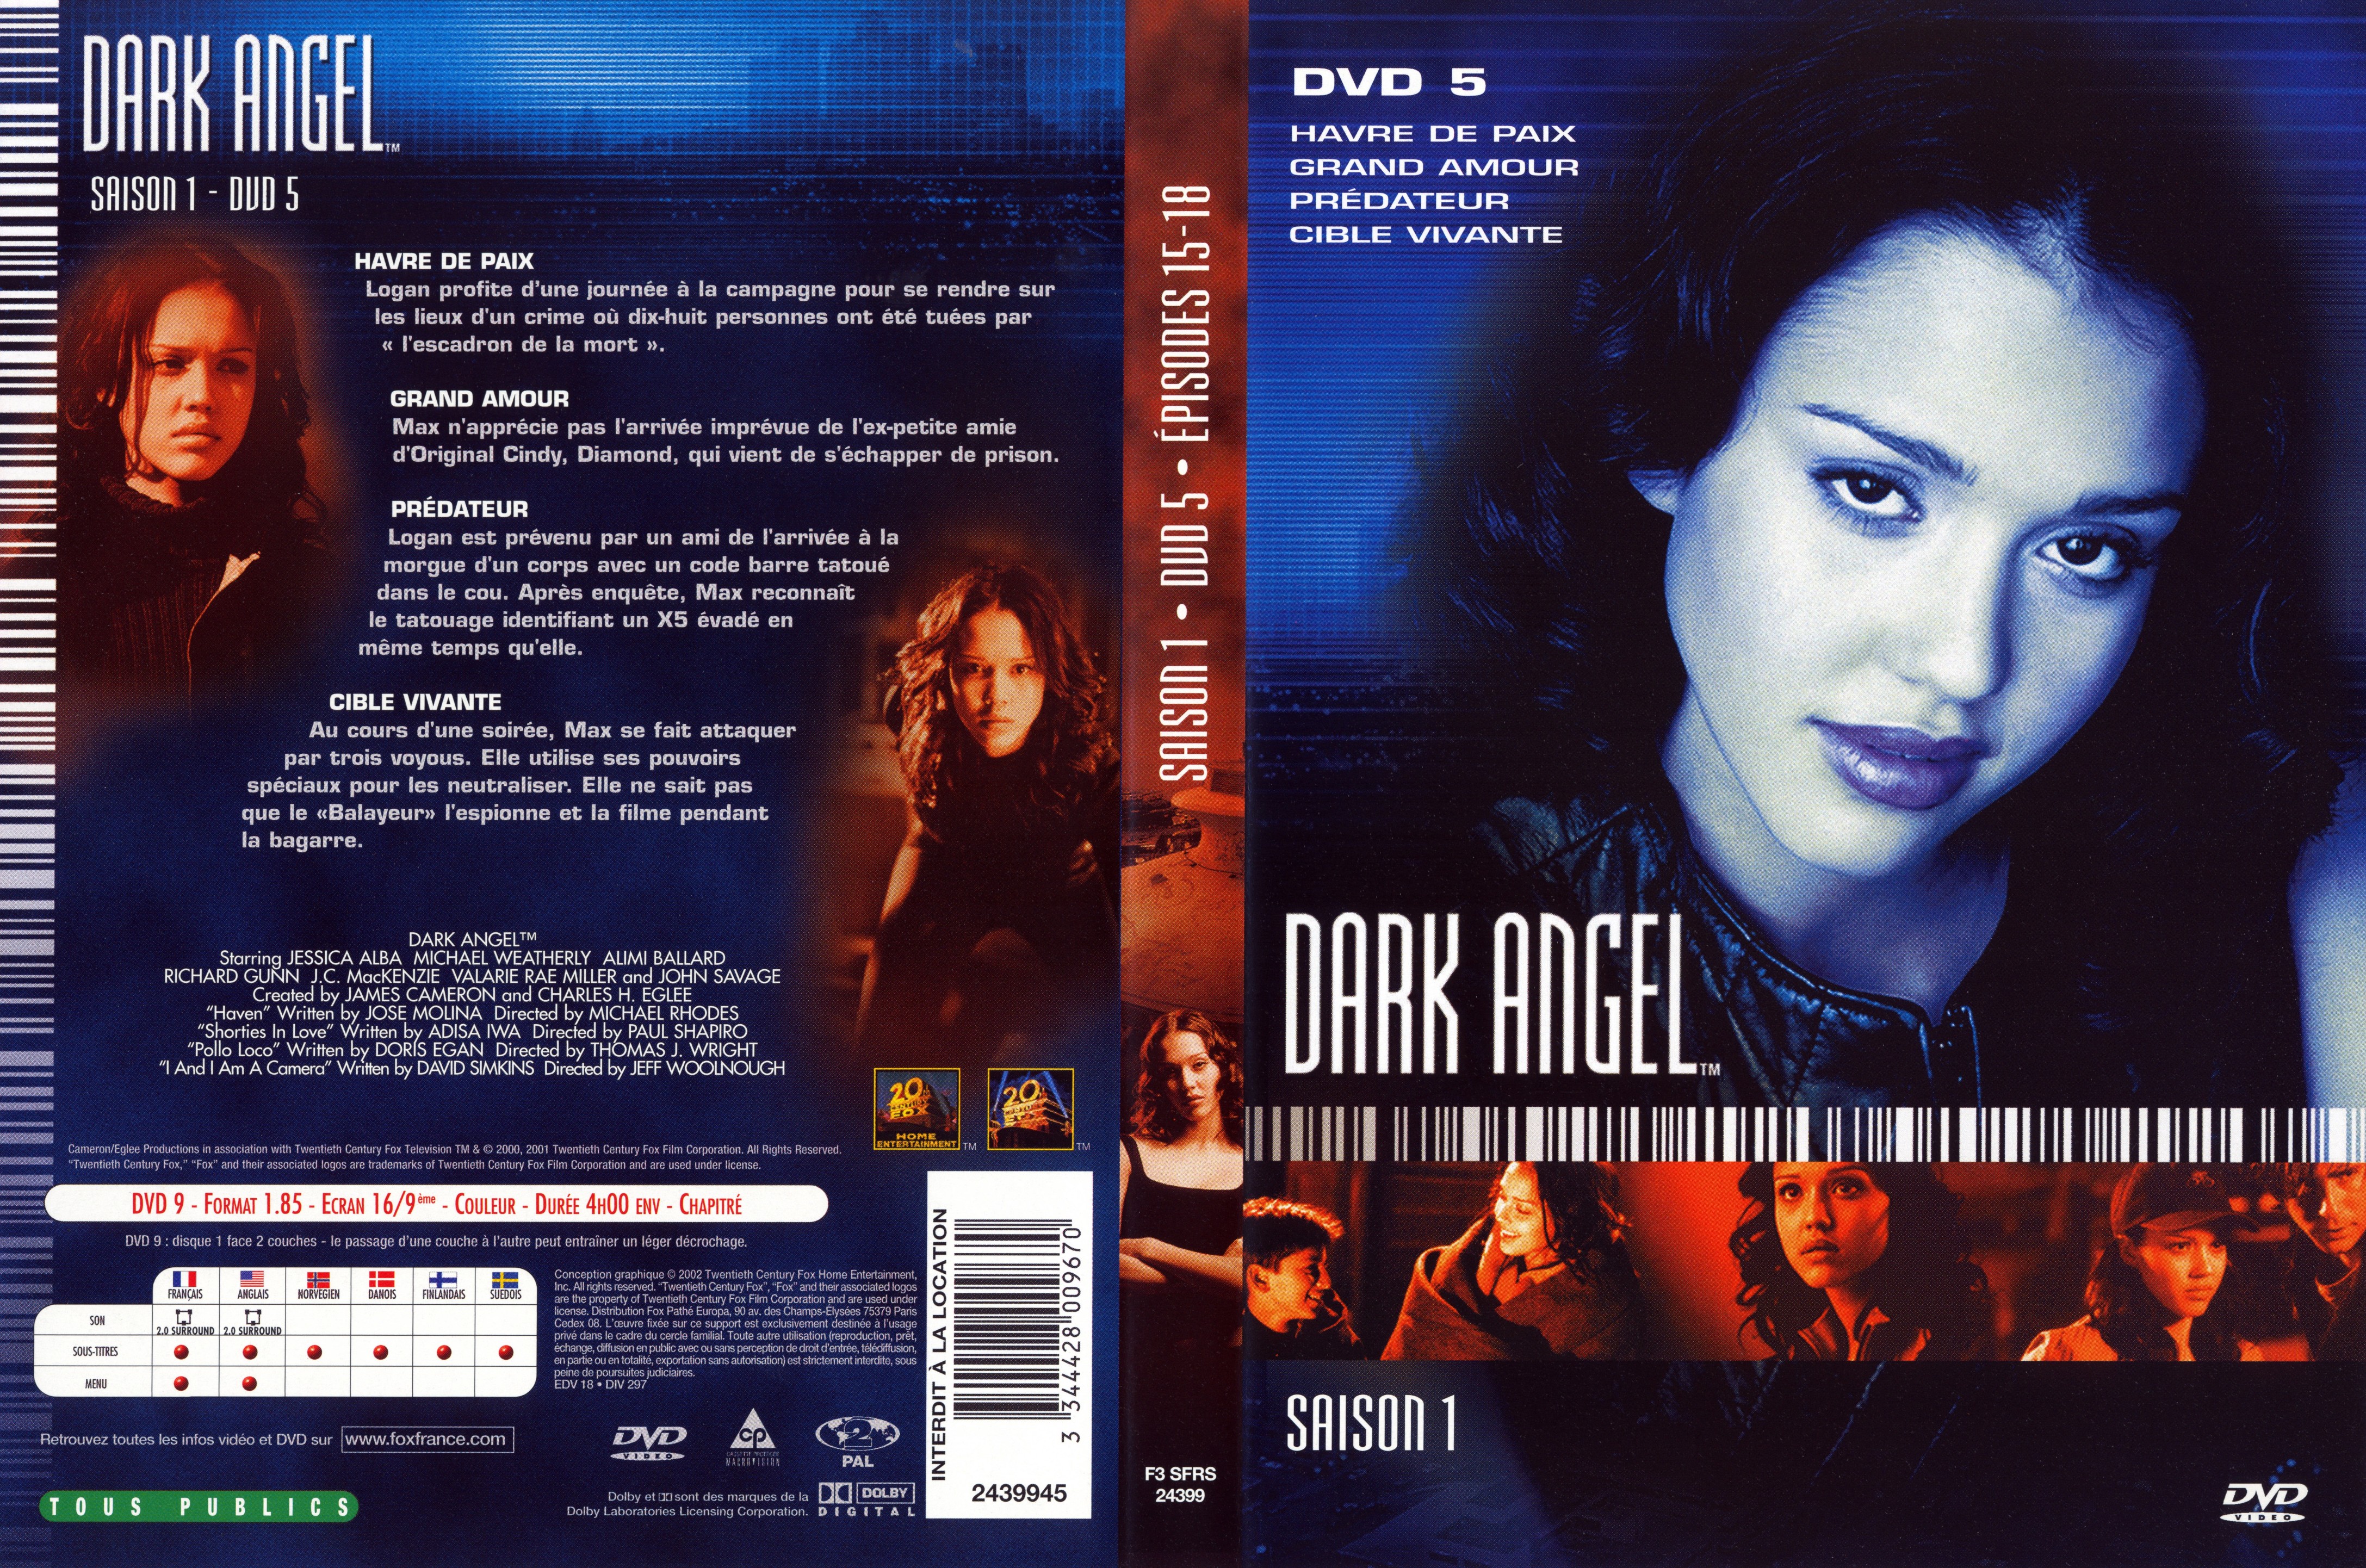 Jaquette DVD Dark Angel Saison 1 DVD 5